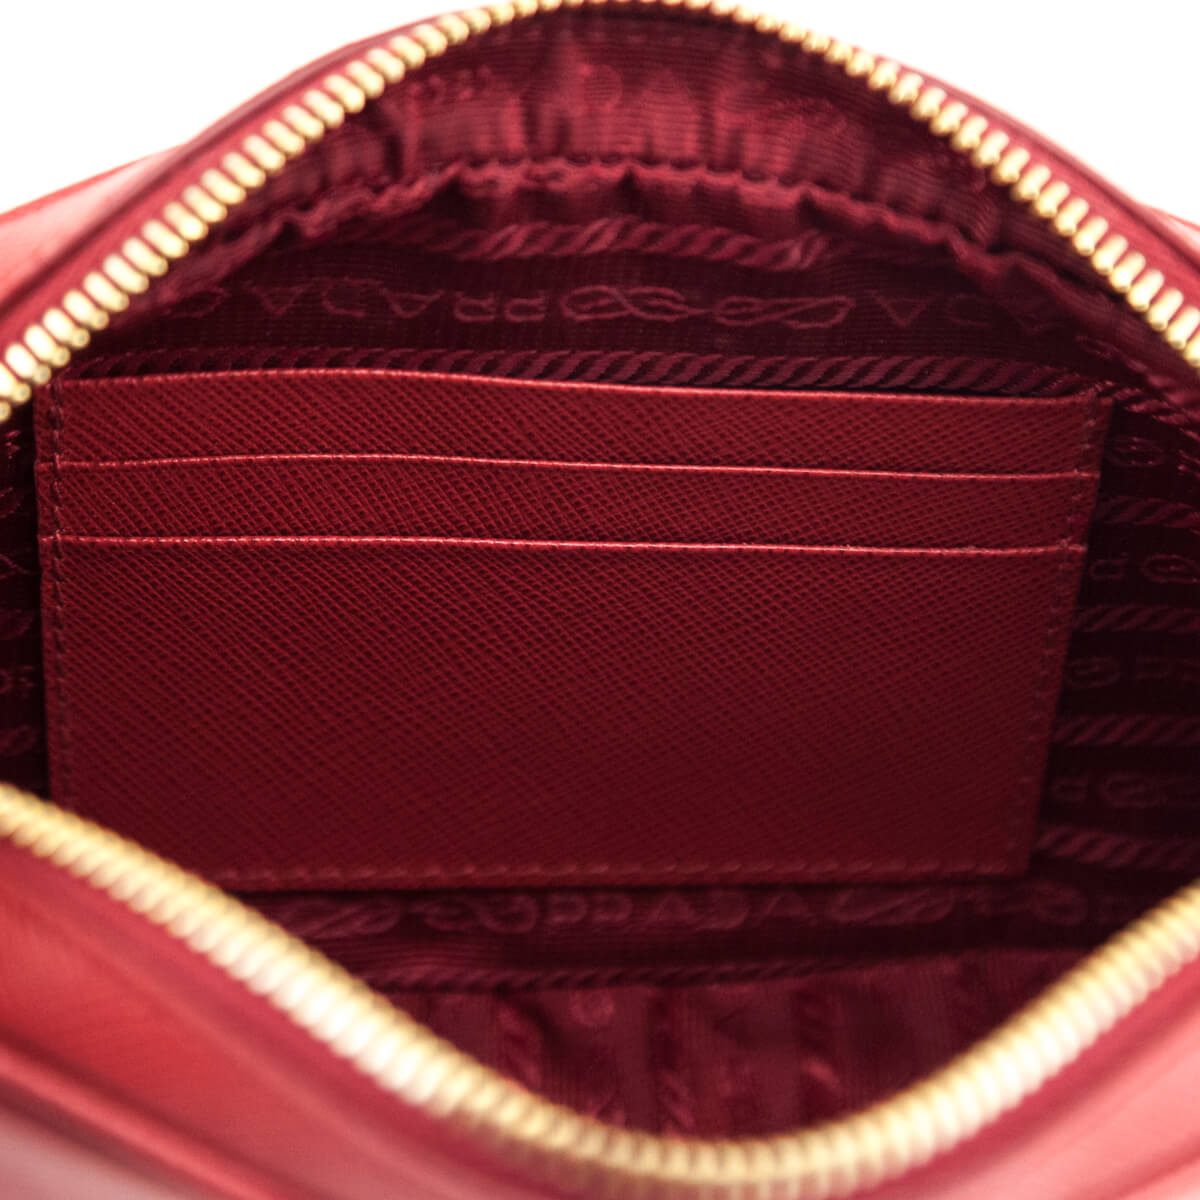 Prada Red Saffiano Small Camera Bag Crossbody - Love that Bag etc - Preowned Authentic Designer Handbags & Preloved Fashions